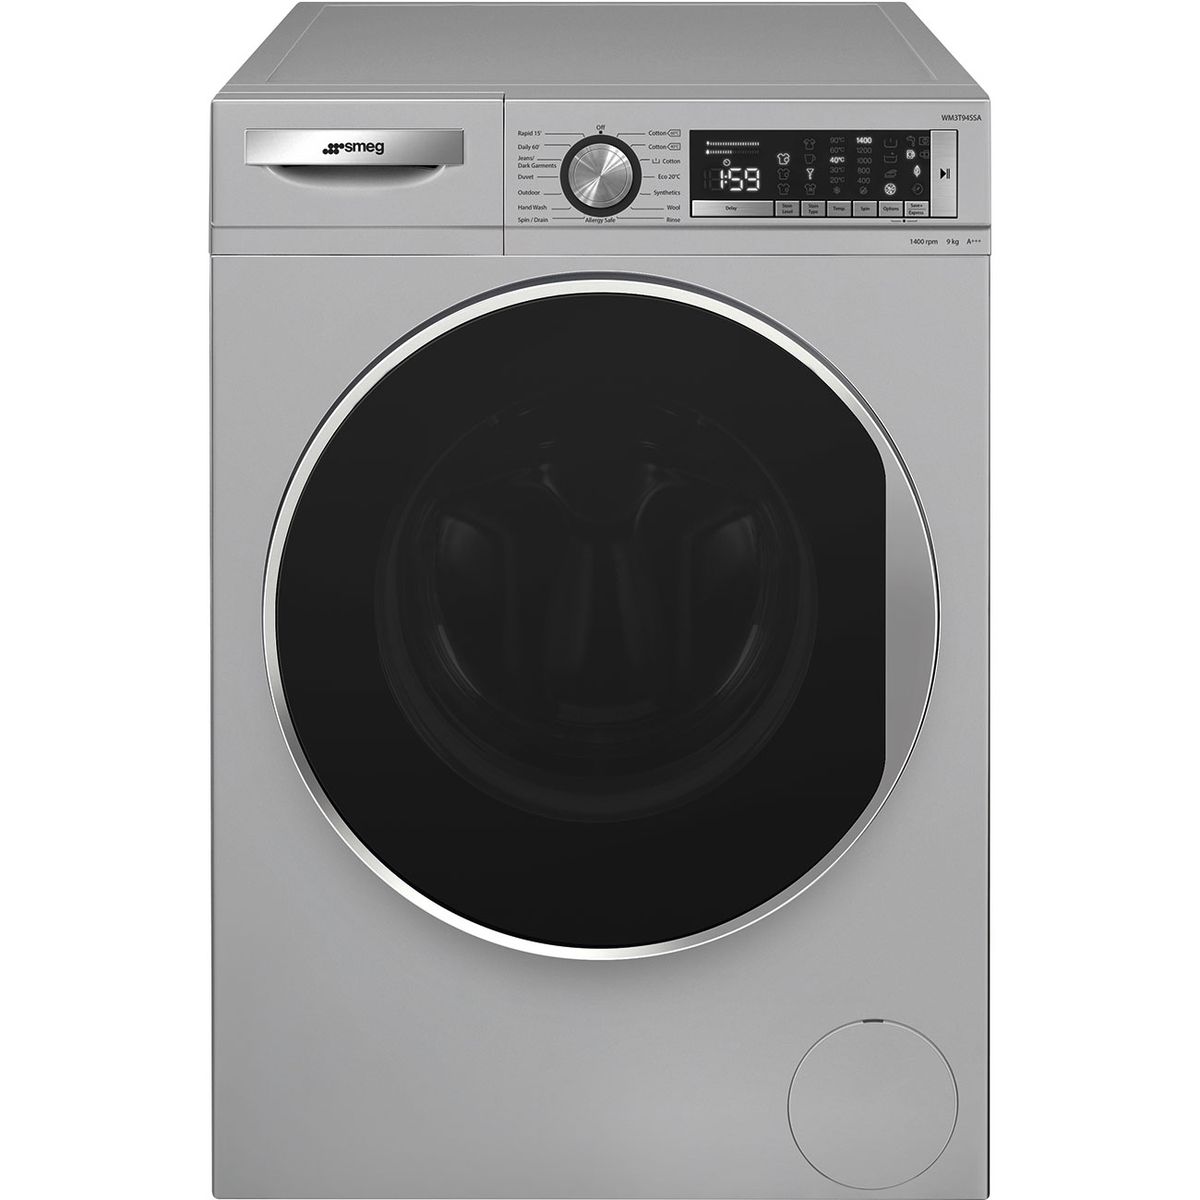 Smeg - 9kg Front Loader Washing Machine Silver - WM3T94SSA